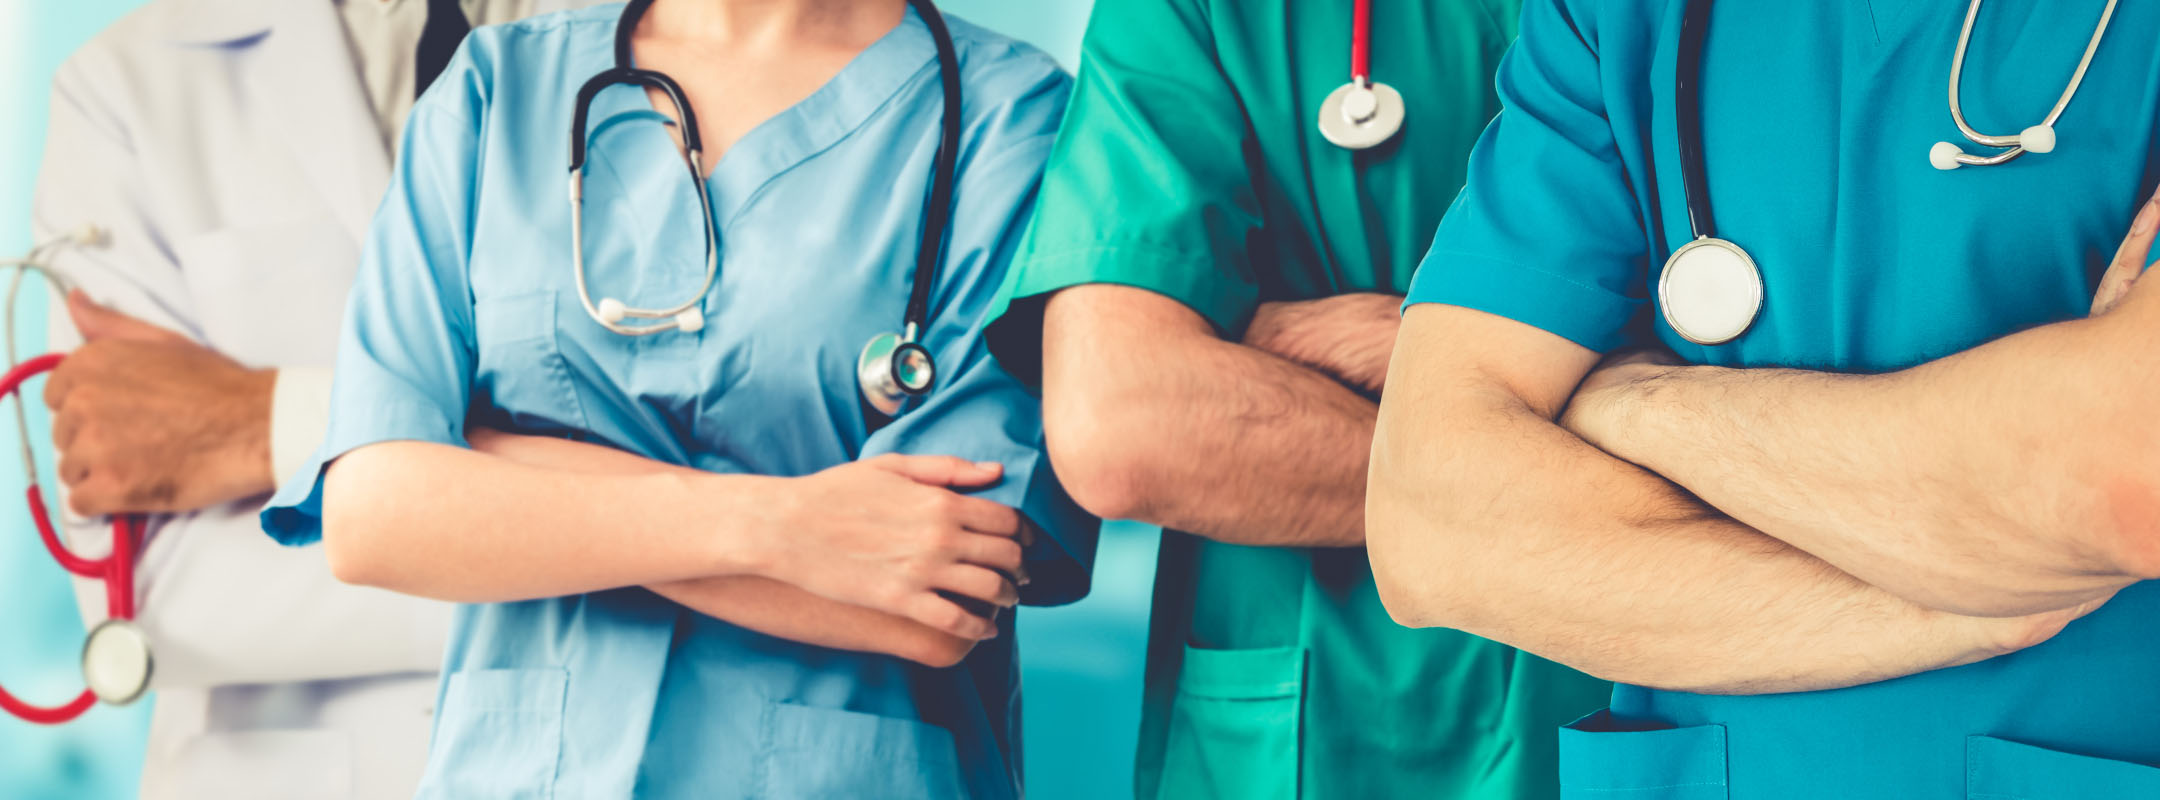 Rettung bei Personalmangel oder Widerspiegelung von unzufriedenen Krankenpflegern?